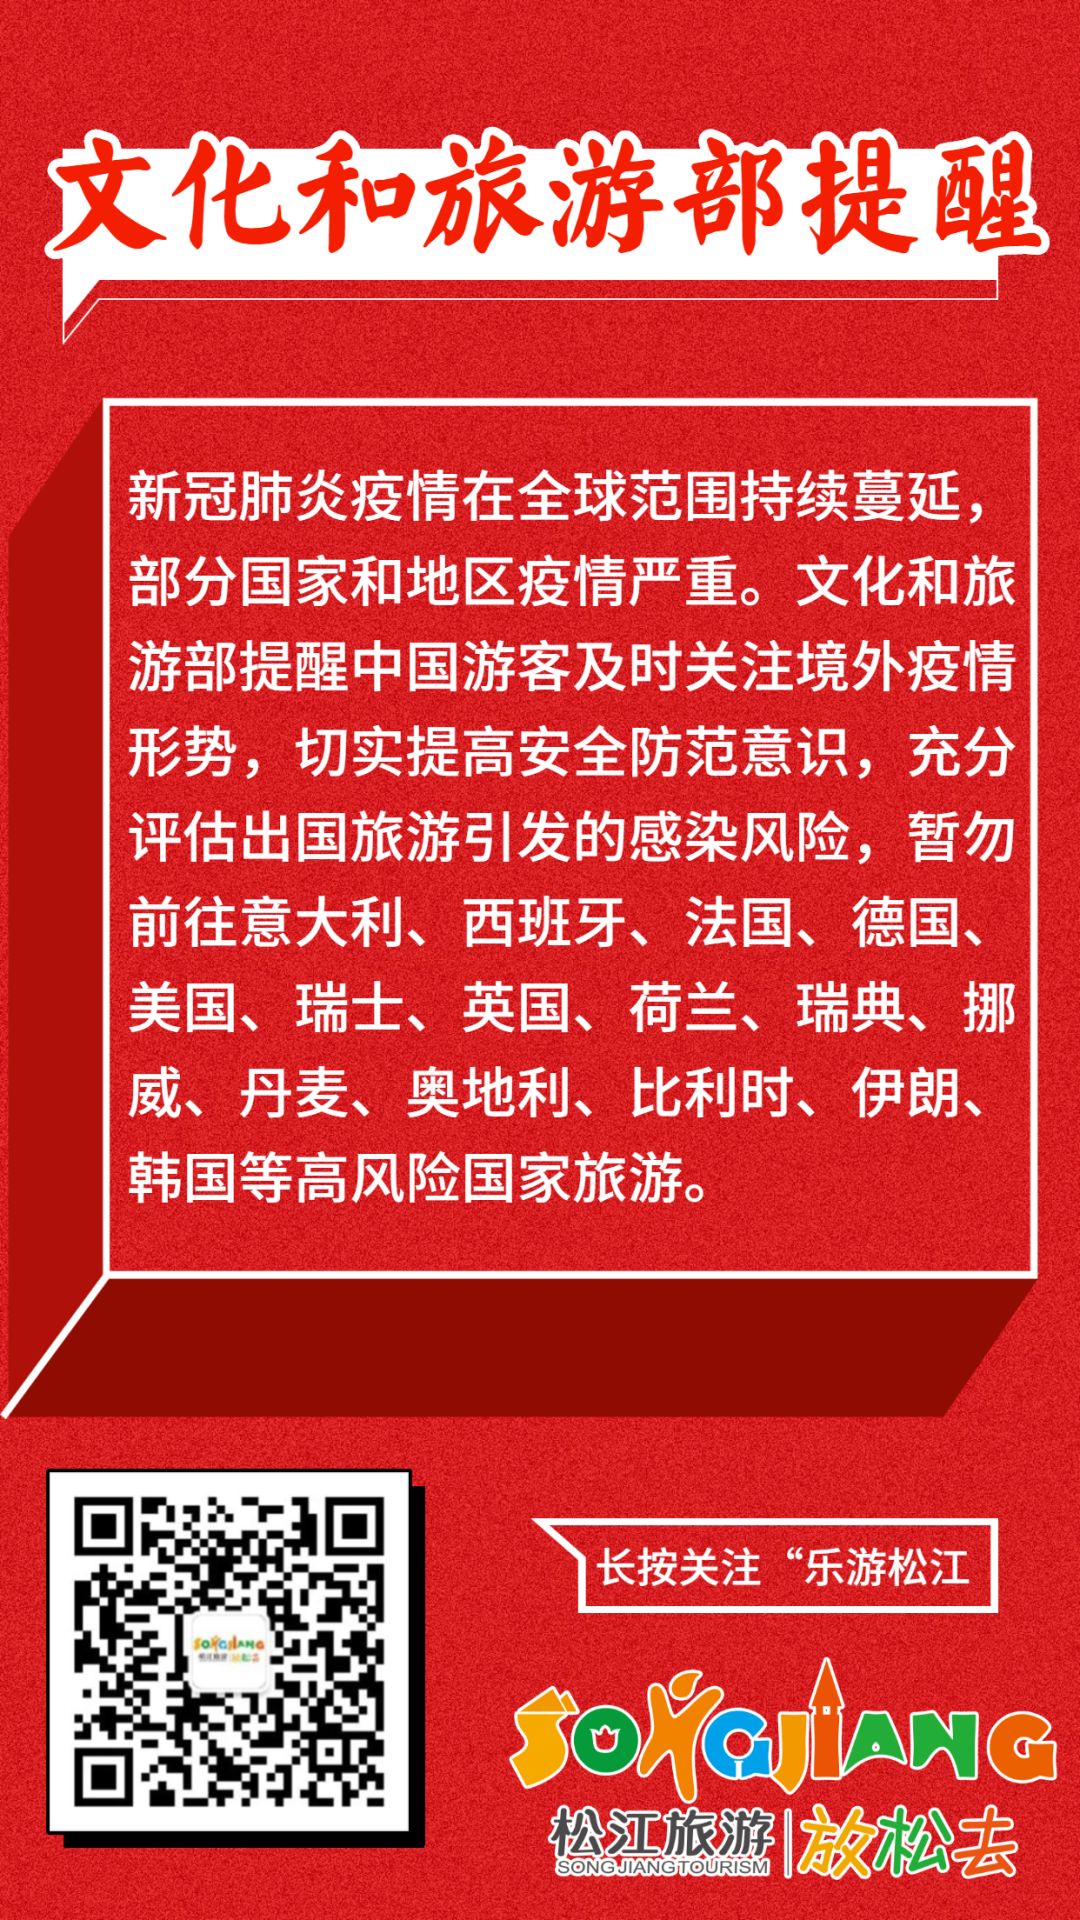 中国文旅部：20日起恢复对涉外营业性演出的受理和审批-侨报网